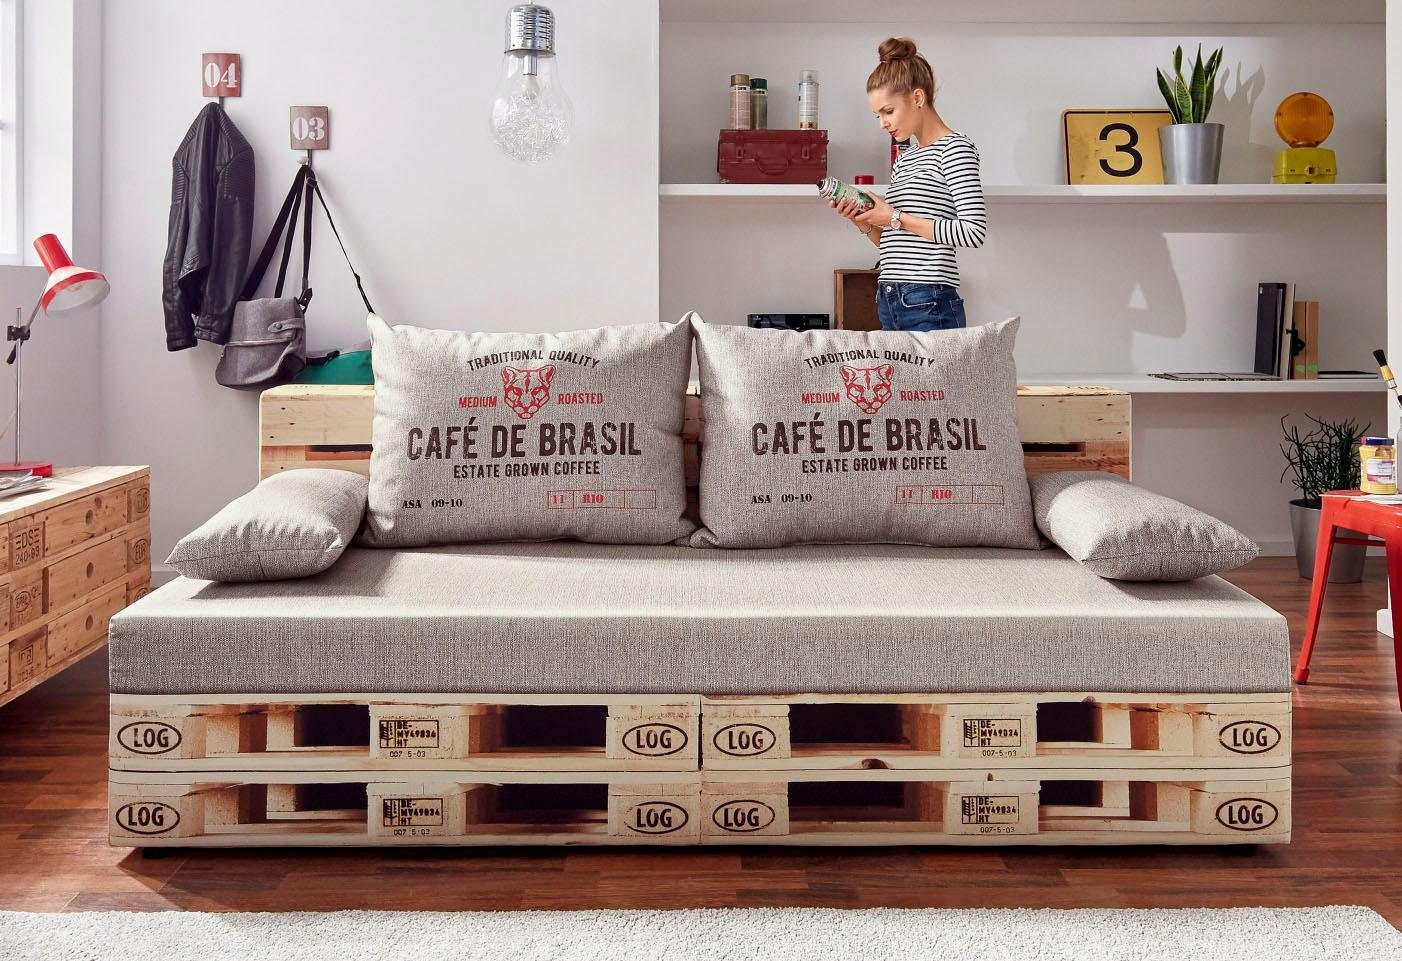 exxpo - sofa fashion Bedbank met slaapfunctie en bedkist, naar keuze met liftbedfunctie en binnenvering